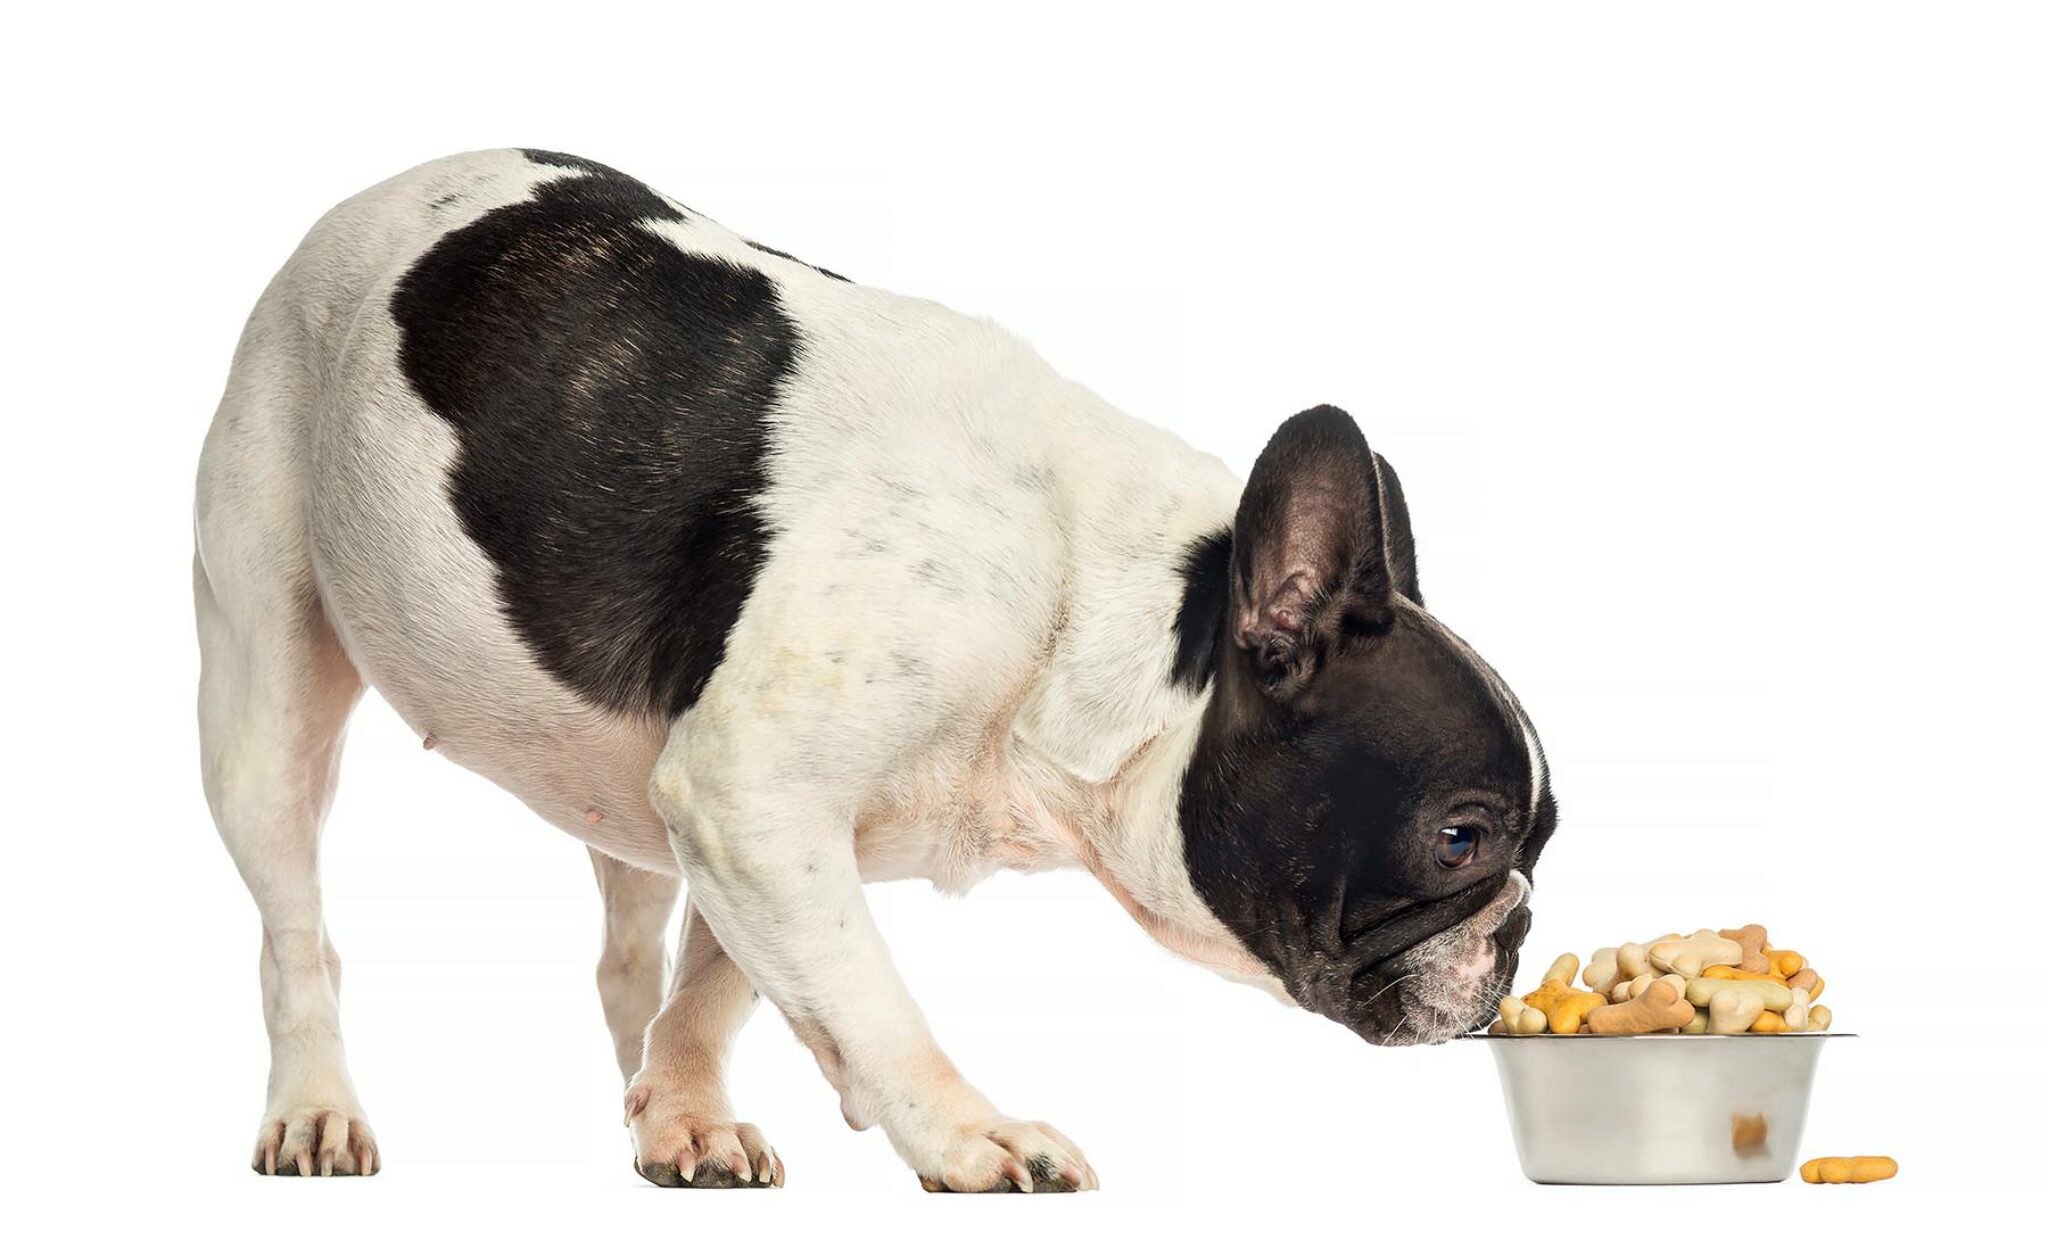 I Migliori Alimenti Per Cani Per Bulldog Americani 2021 - Recensioni E Scelte Migliori